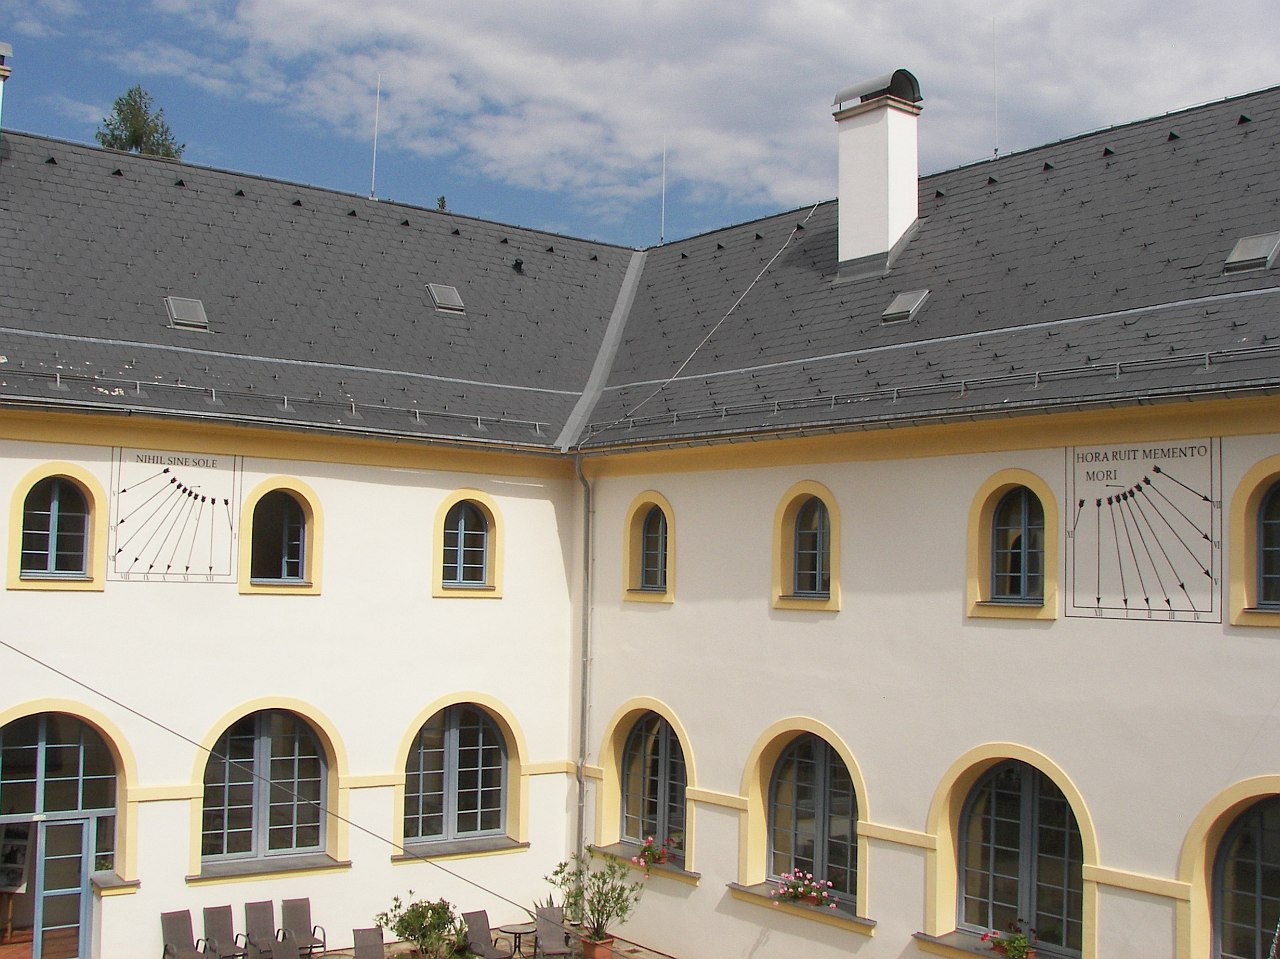 Dvojice slunečních hodin - klášter sv. Františka Serafinského, vnitřní nádvoří - Hostinné, Česká republika